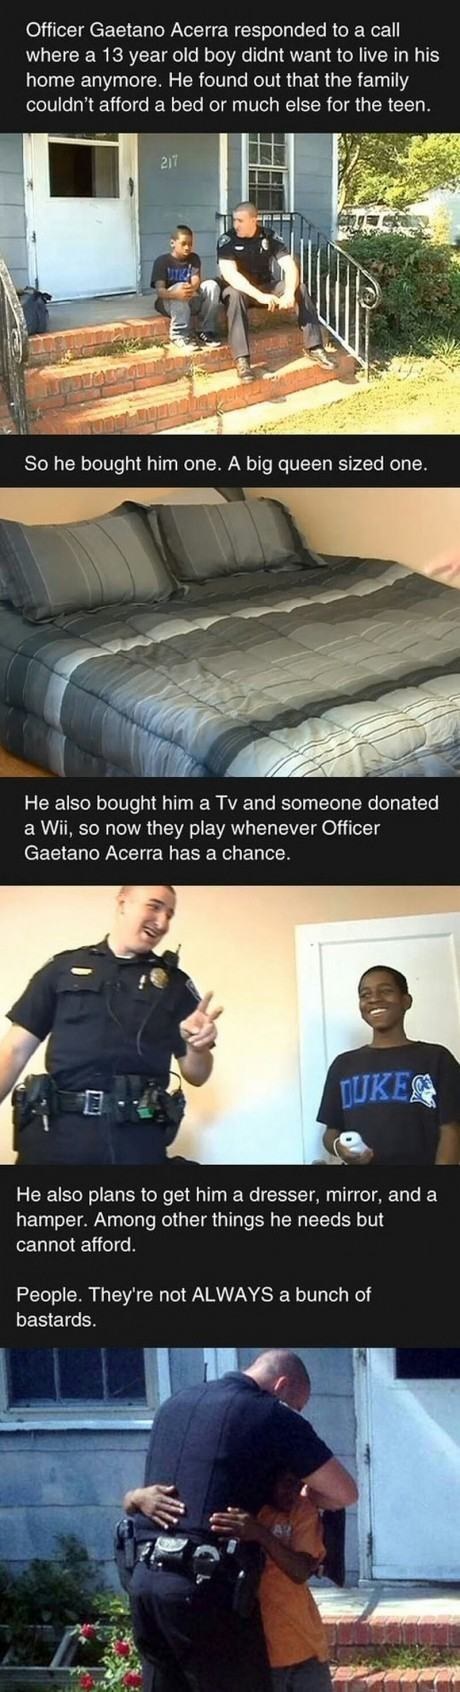 Police Officer Kindness